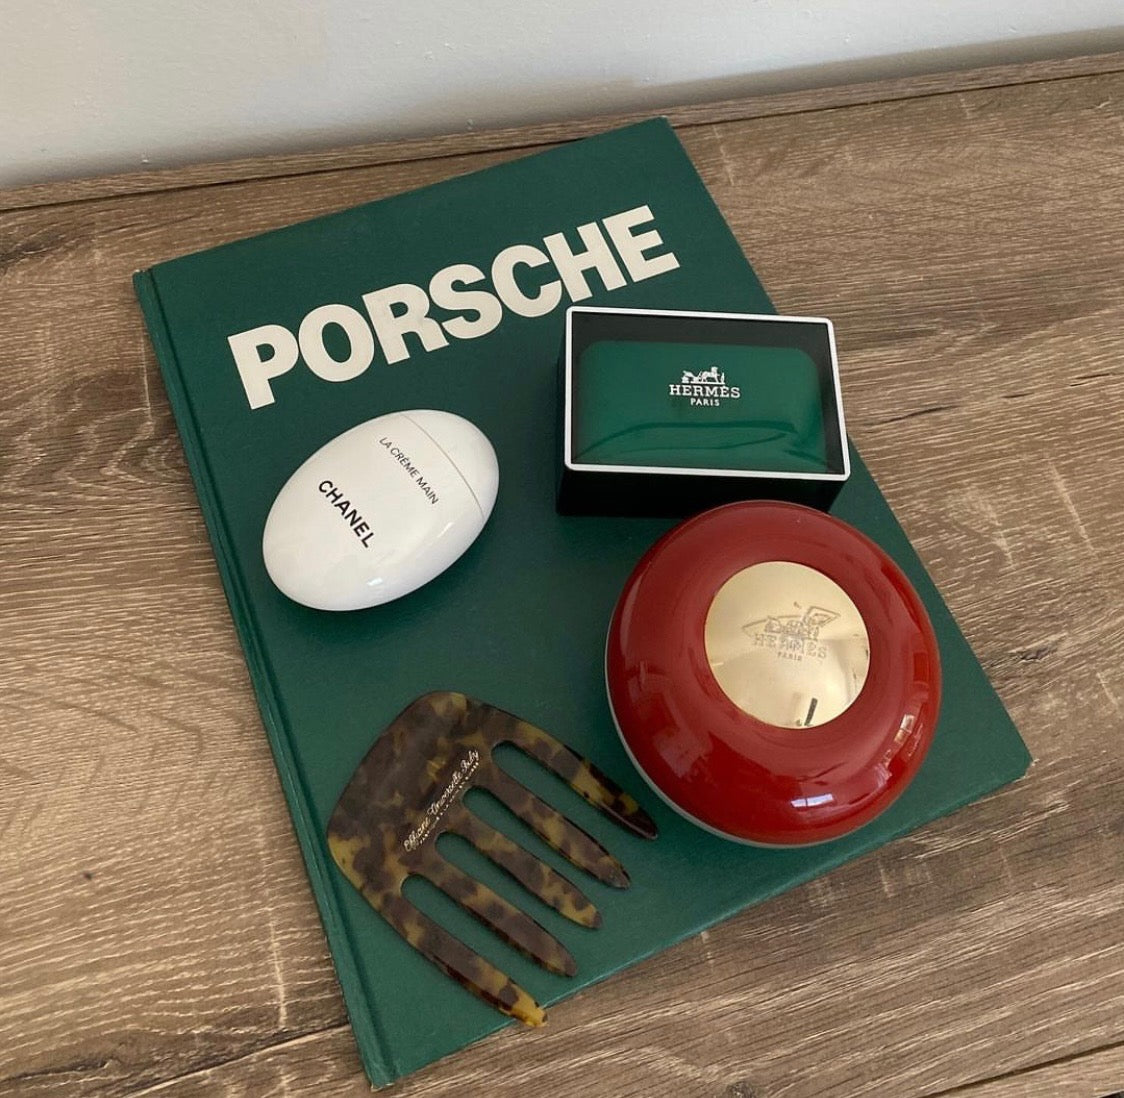 Porsche Book